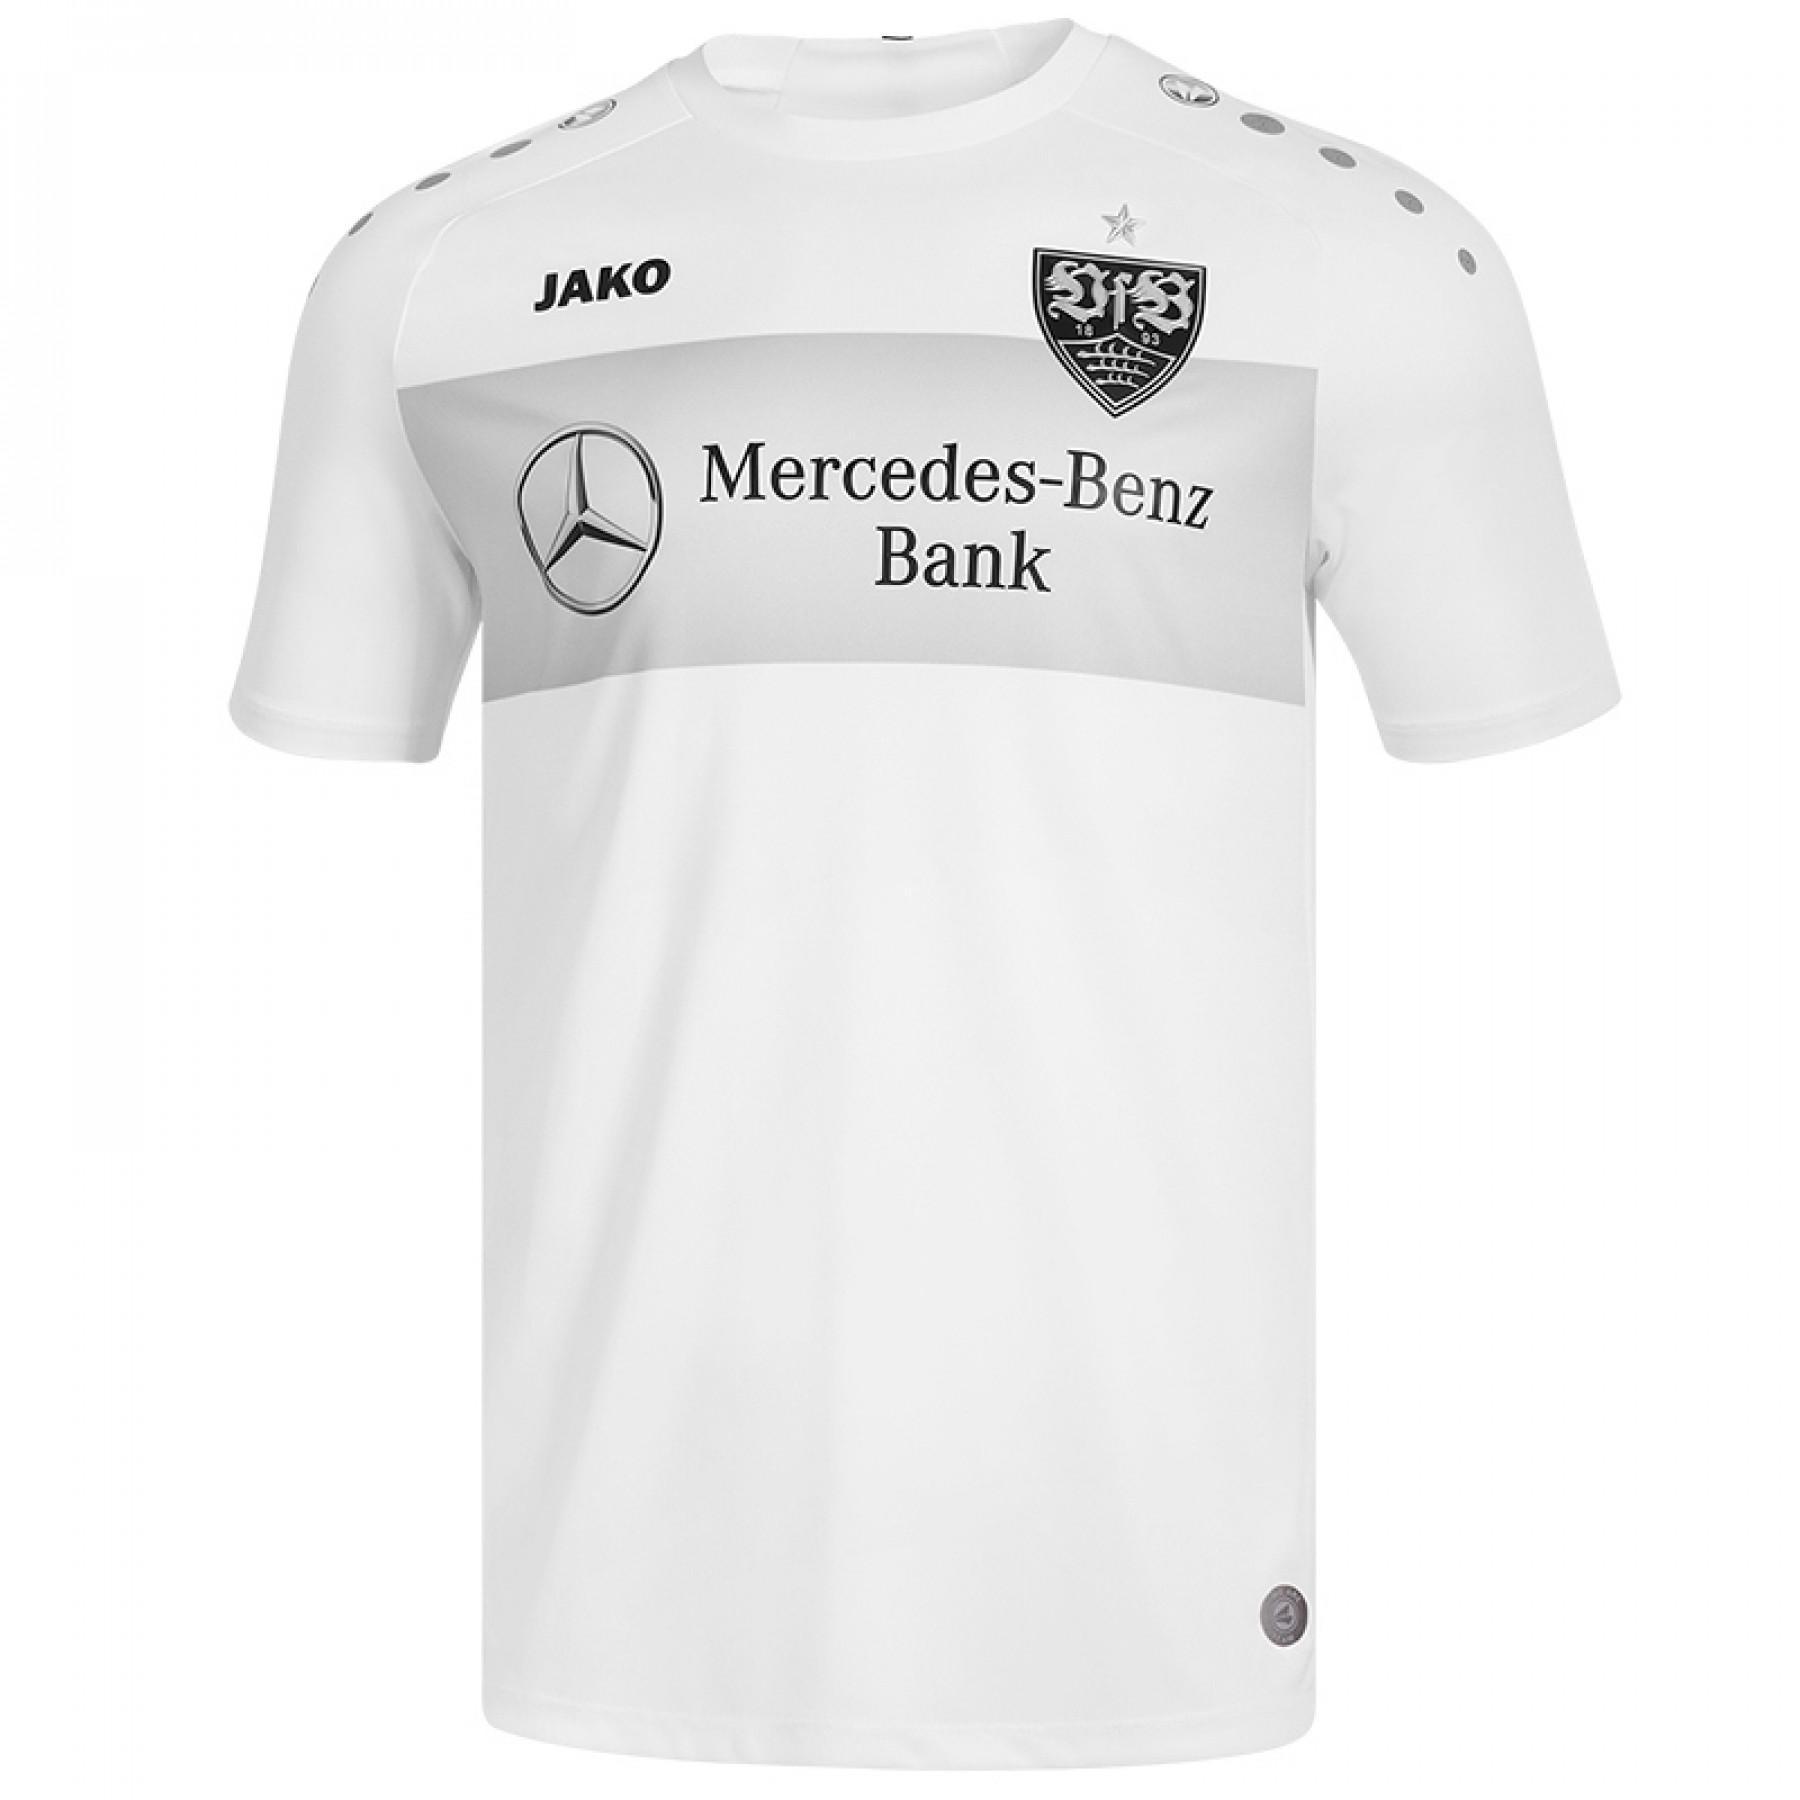 T-shirt VfB Stuttgart teamline 2019/20